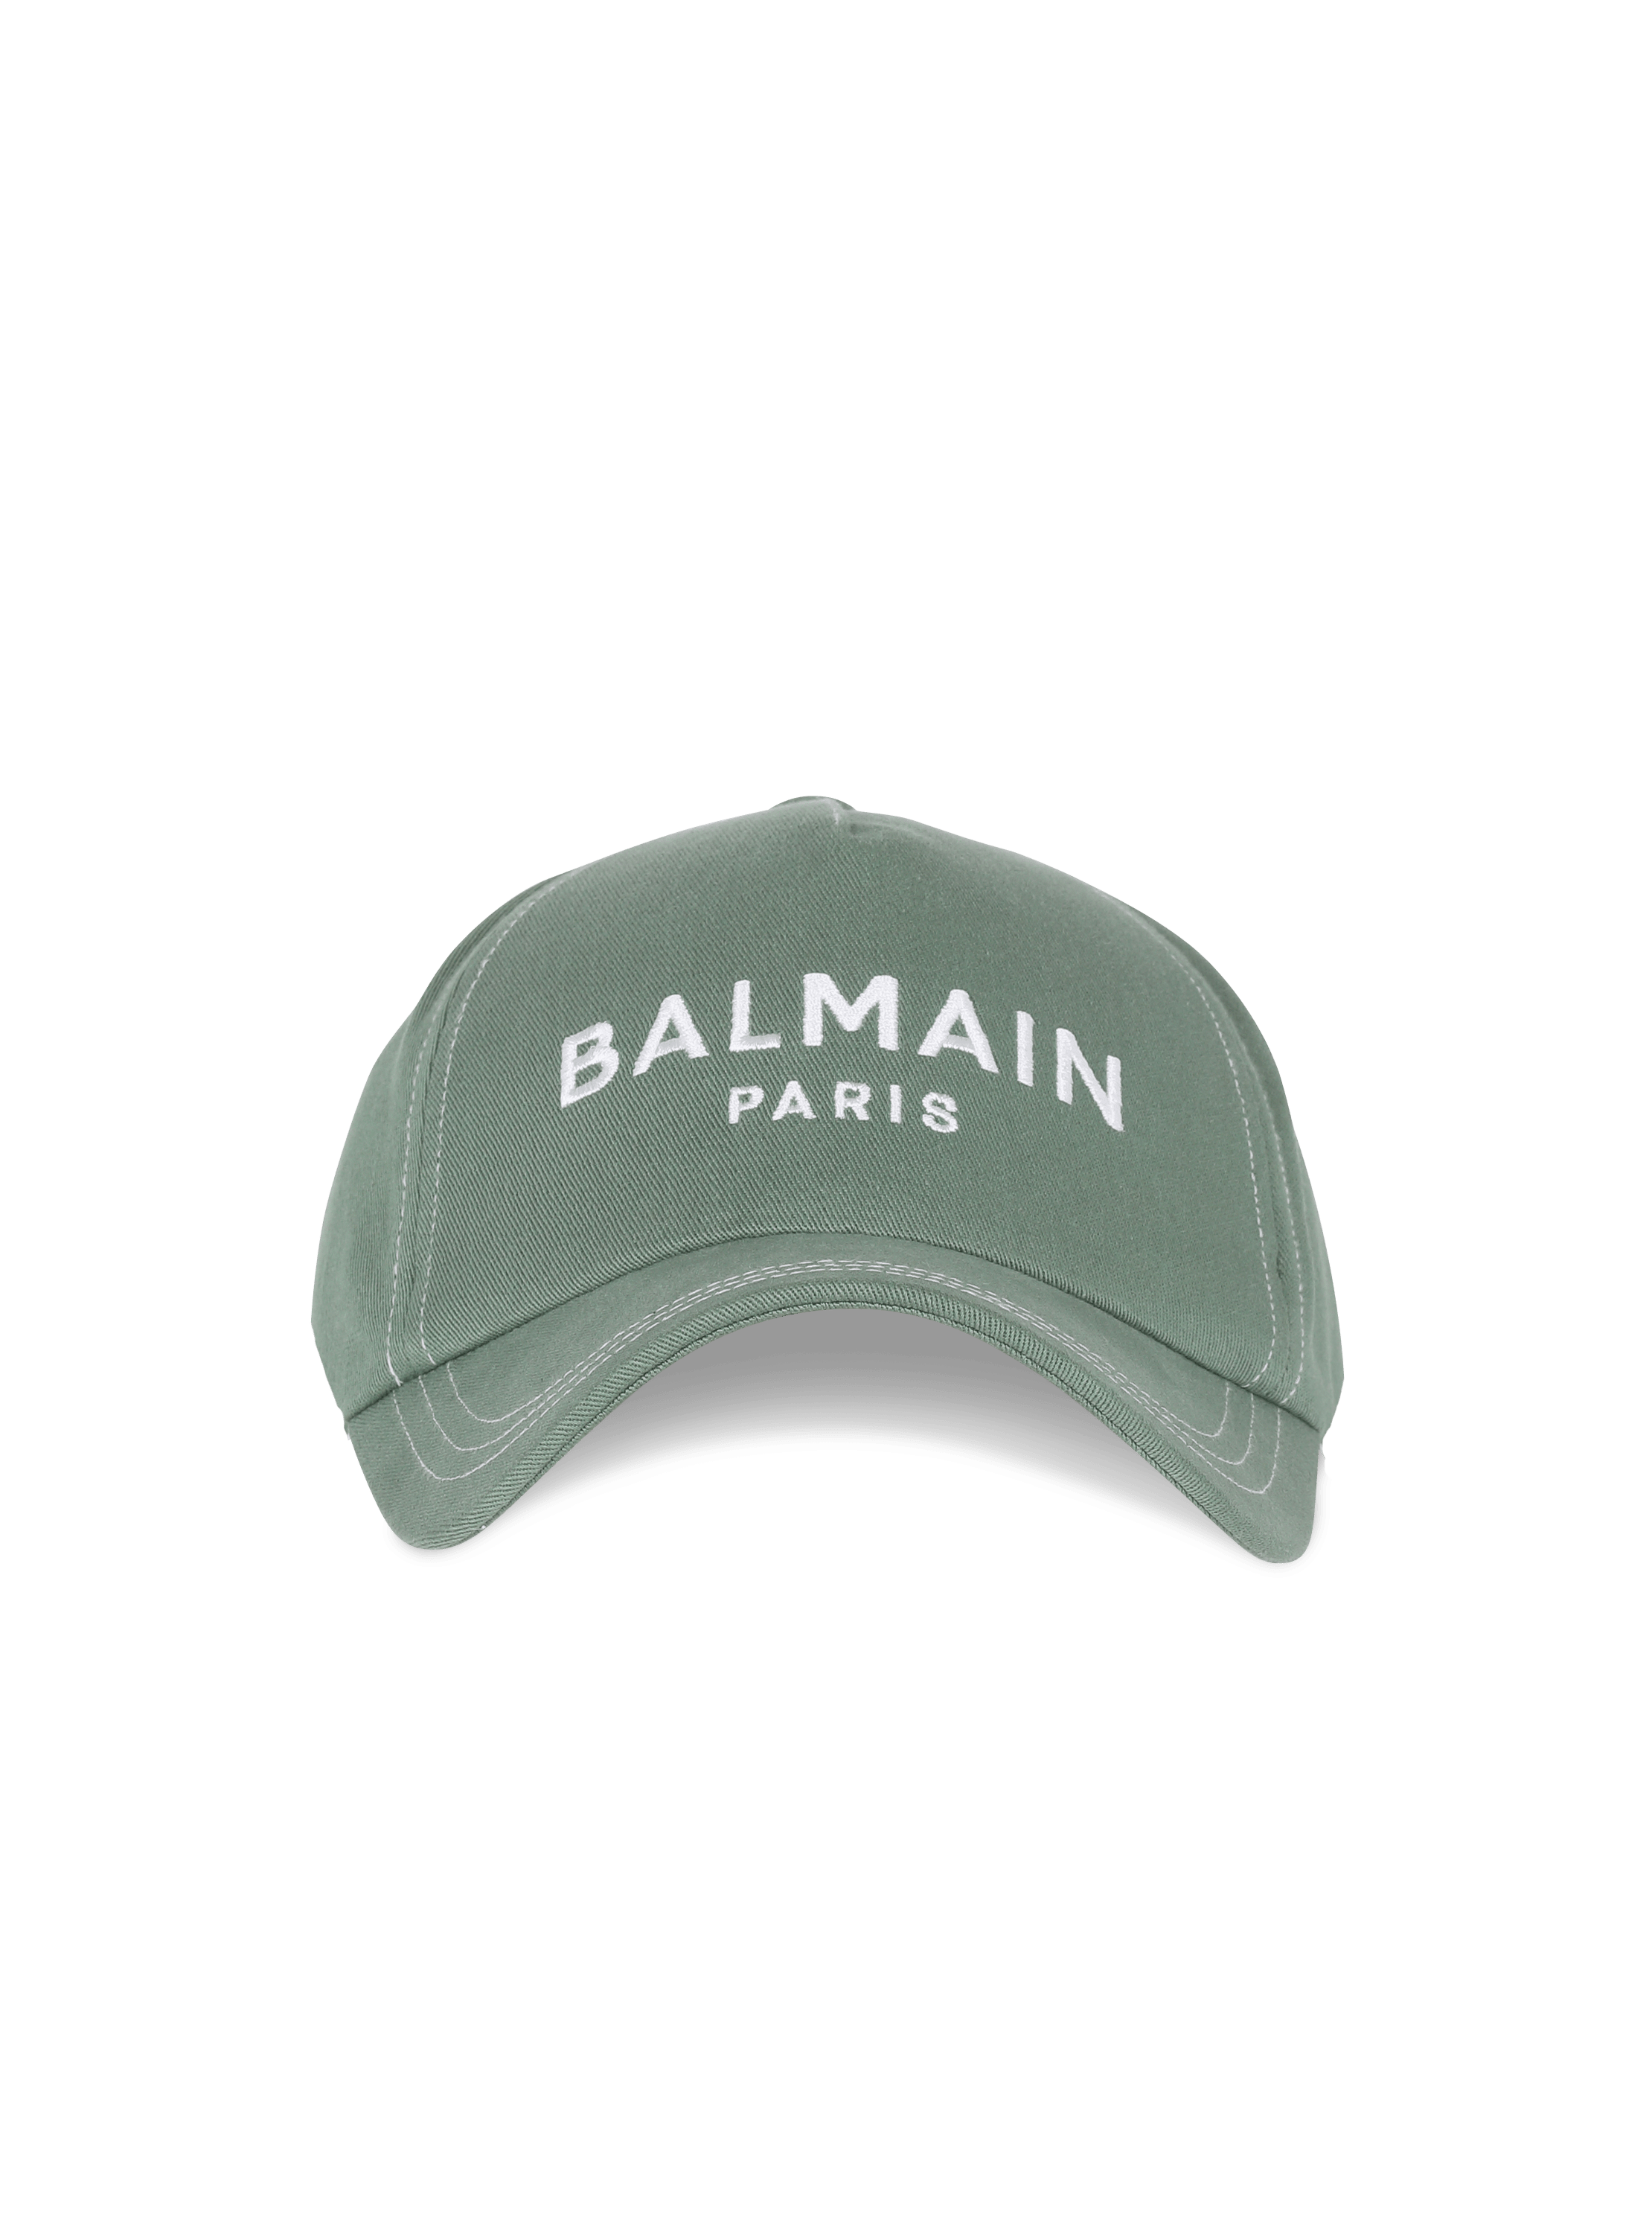 Balmain embroidered cotton cap, green, hi-res